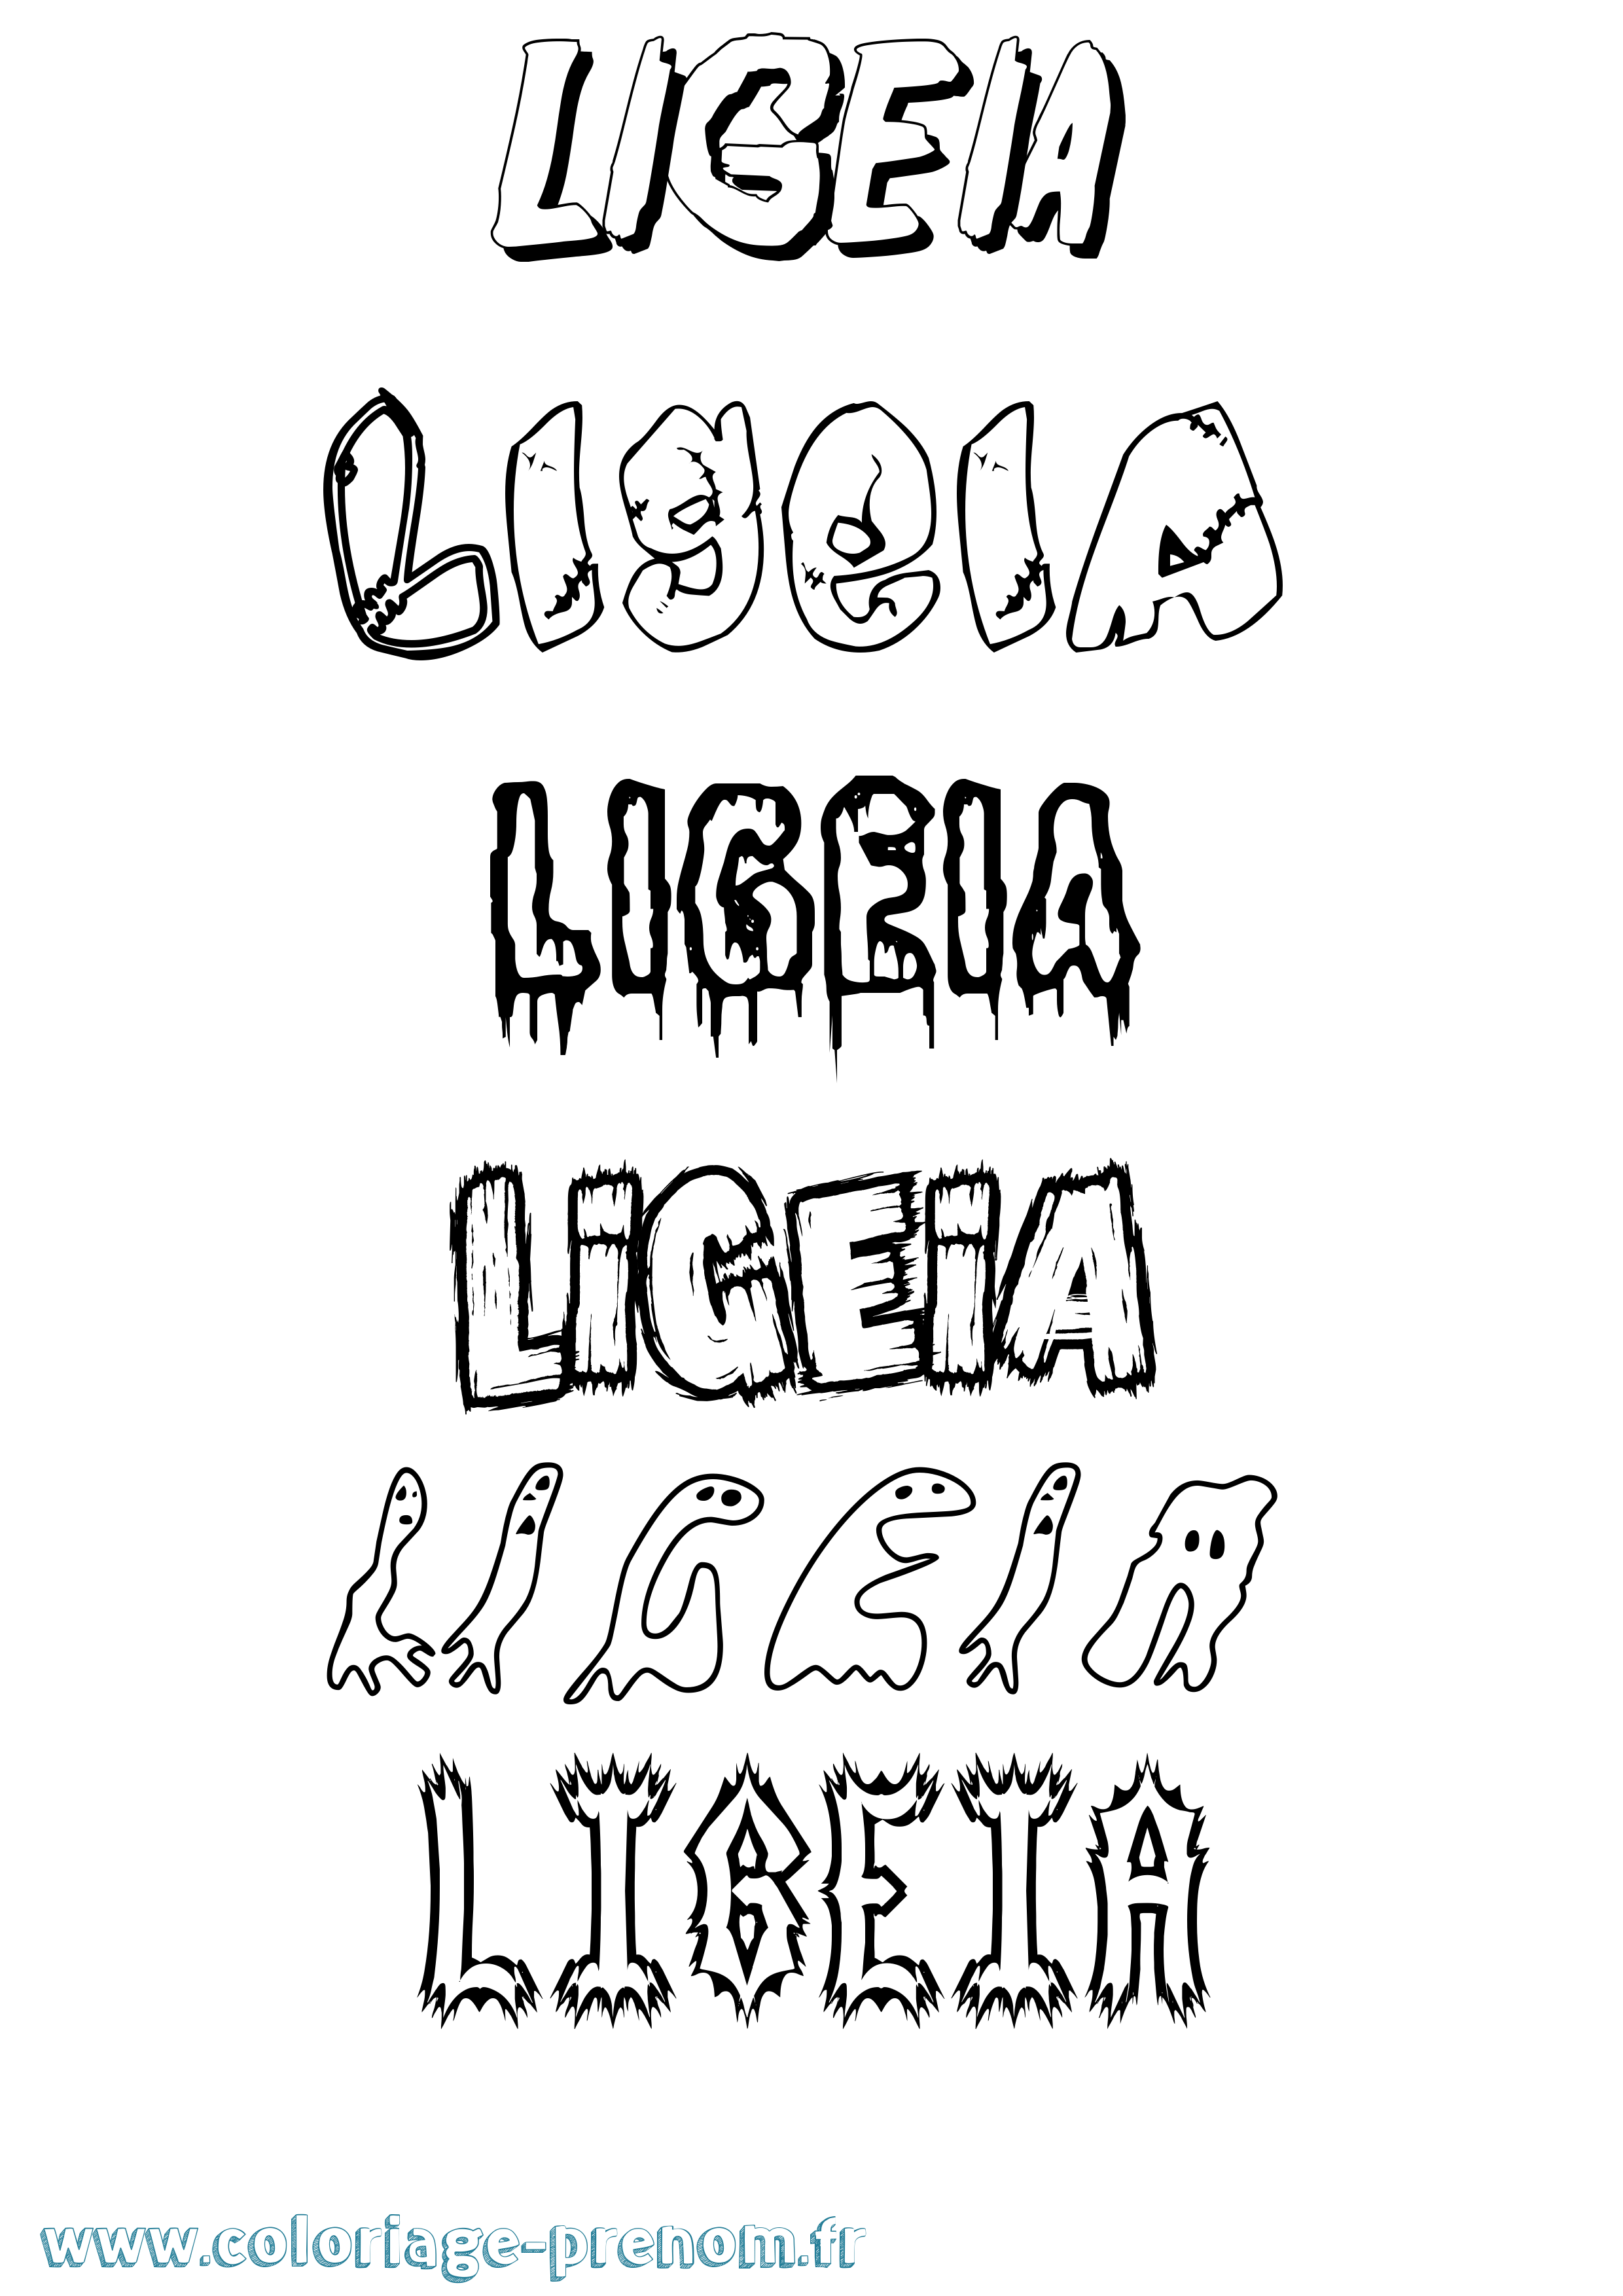 Coloriage prénom Ligeia Frisson